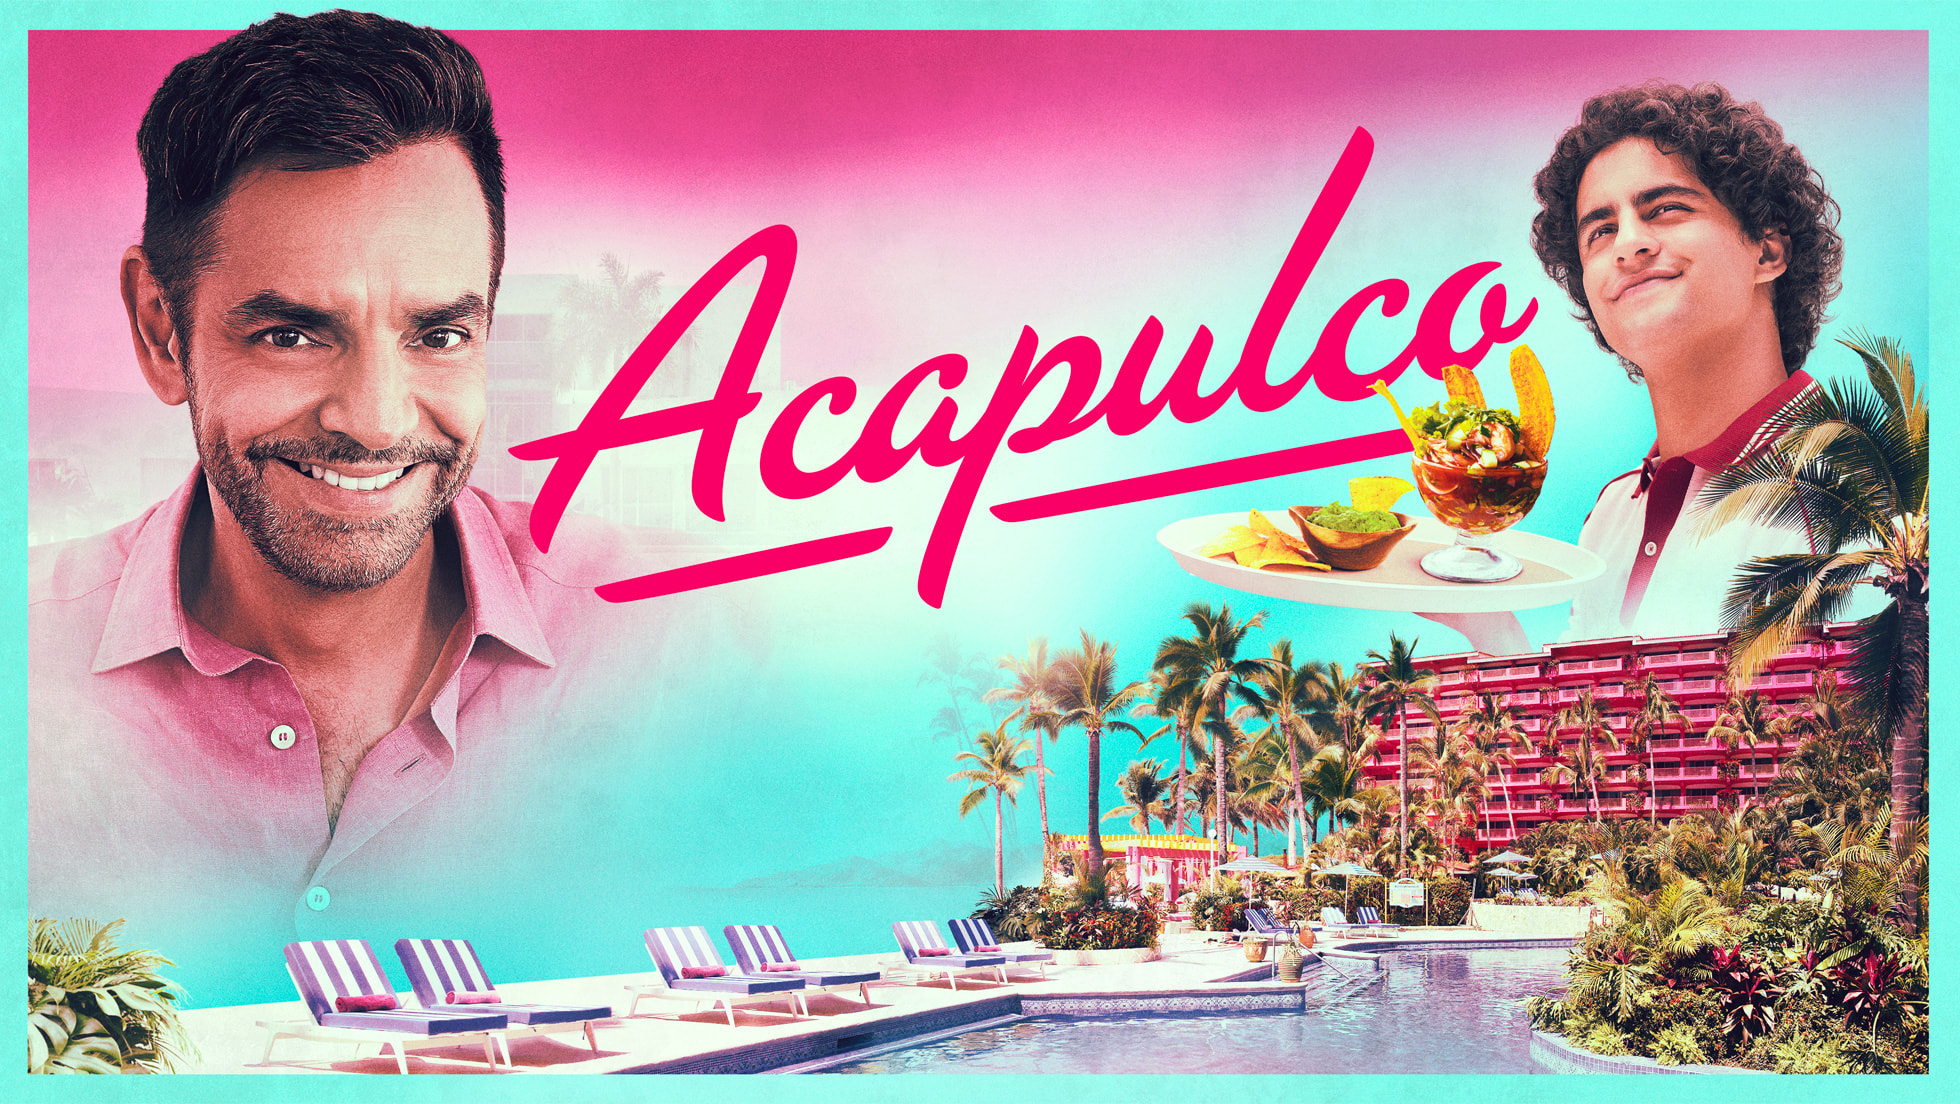 Acapulco' con Eugenio Derbez estrena el 8 de octubre - Aires de Hidalgo